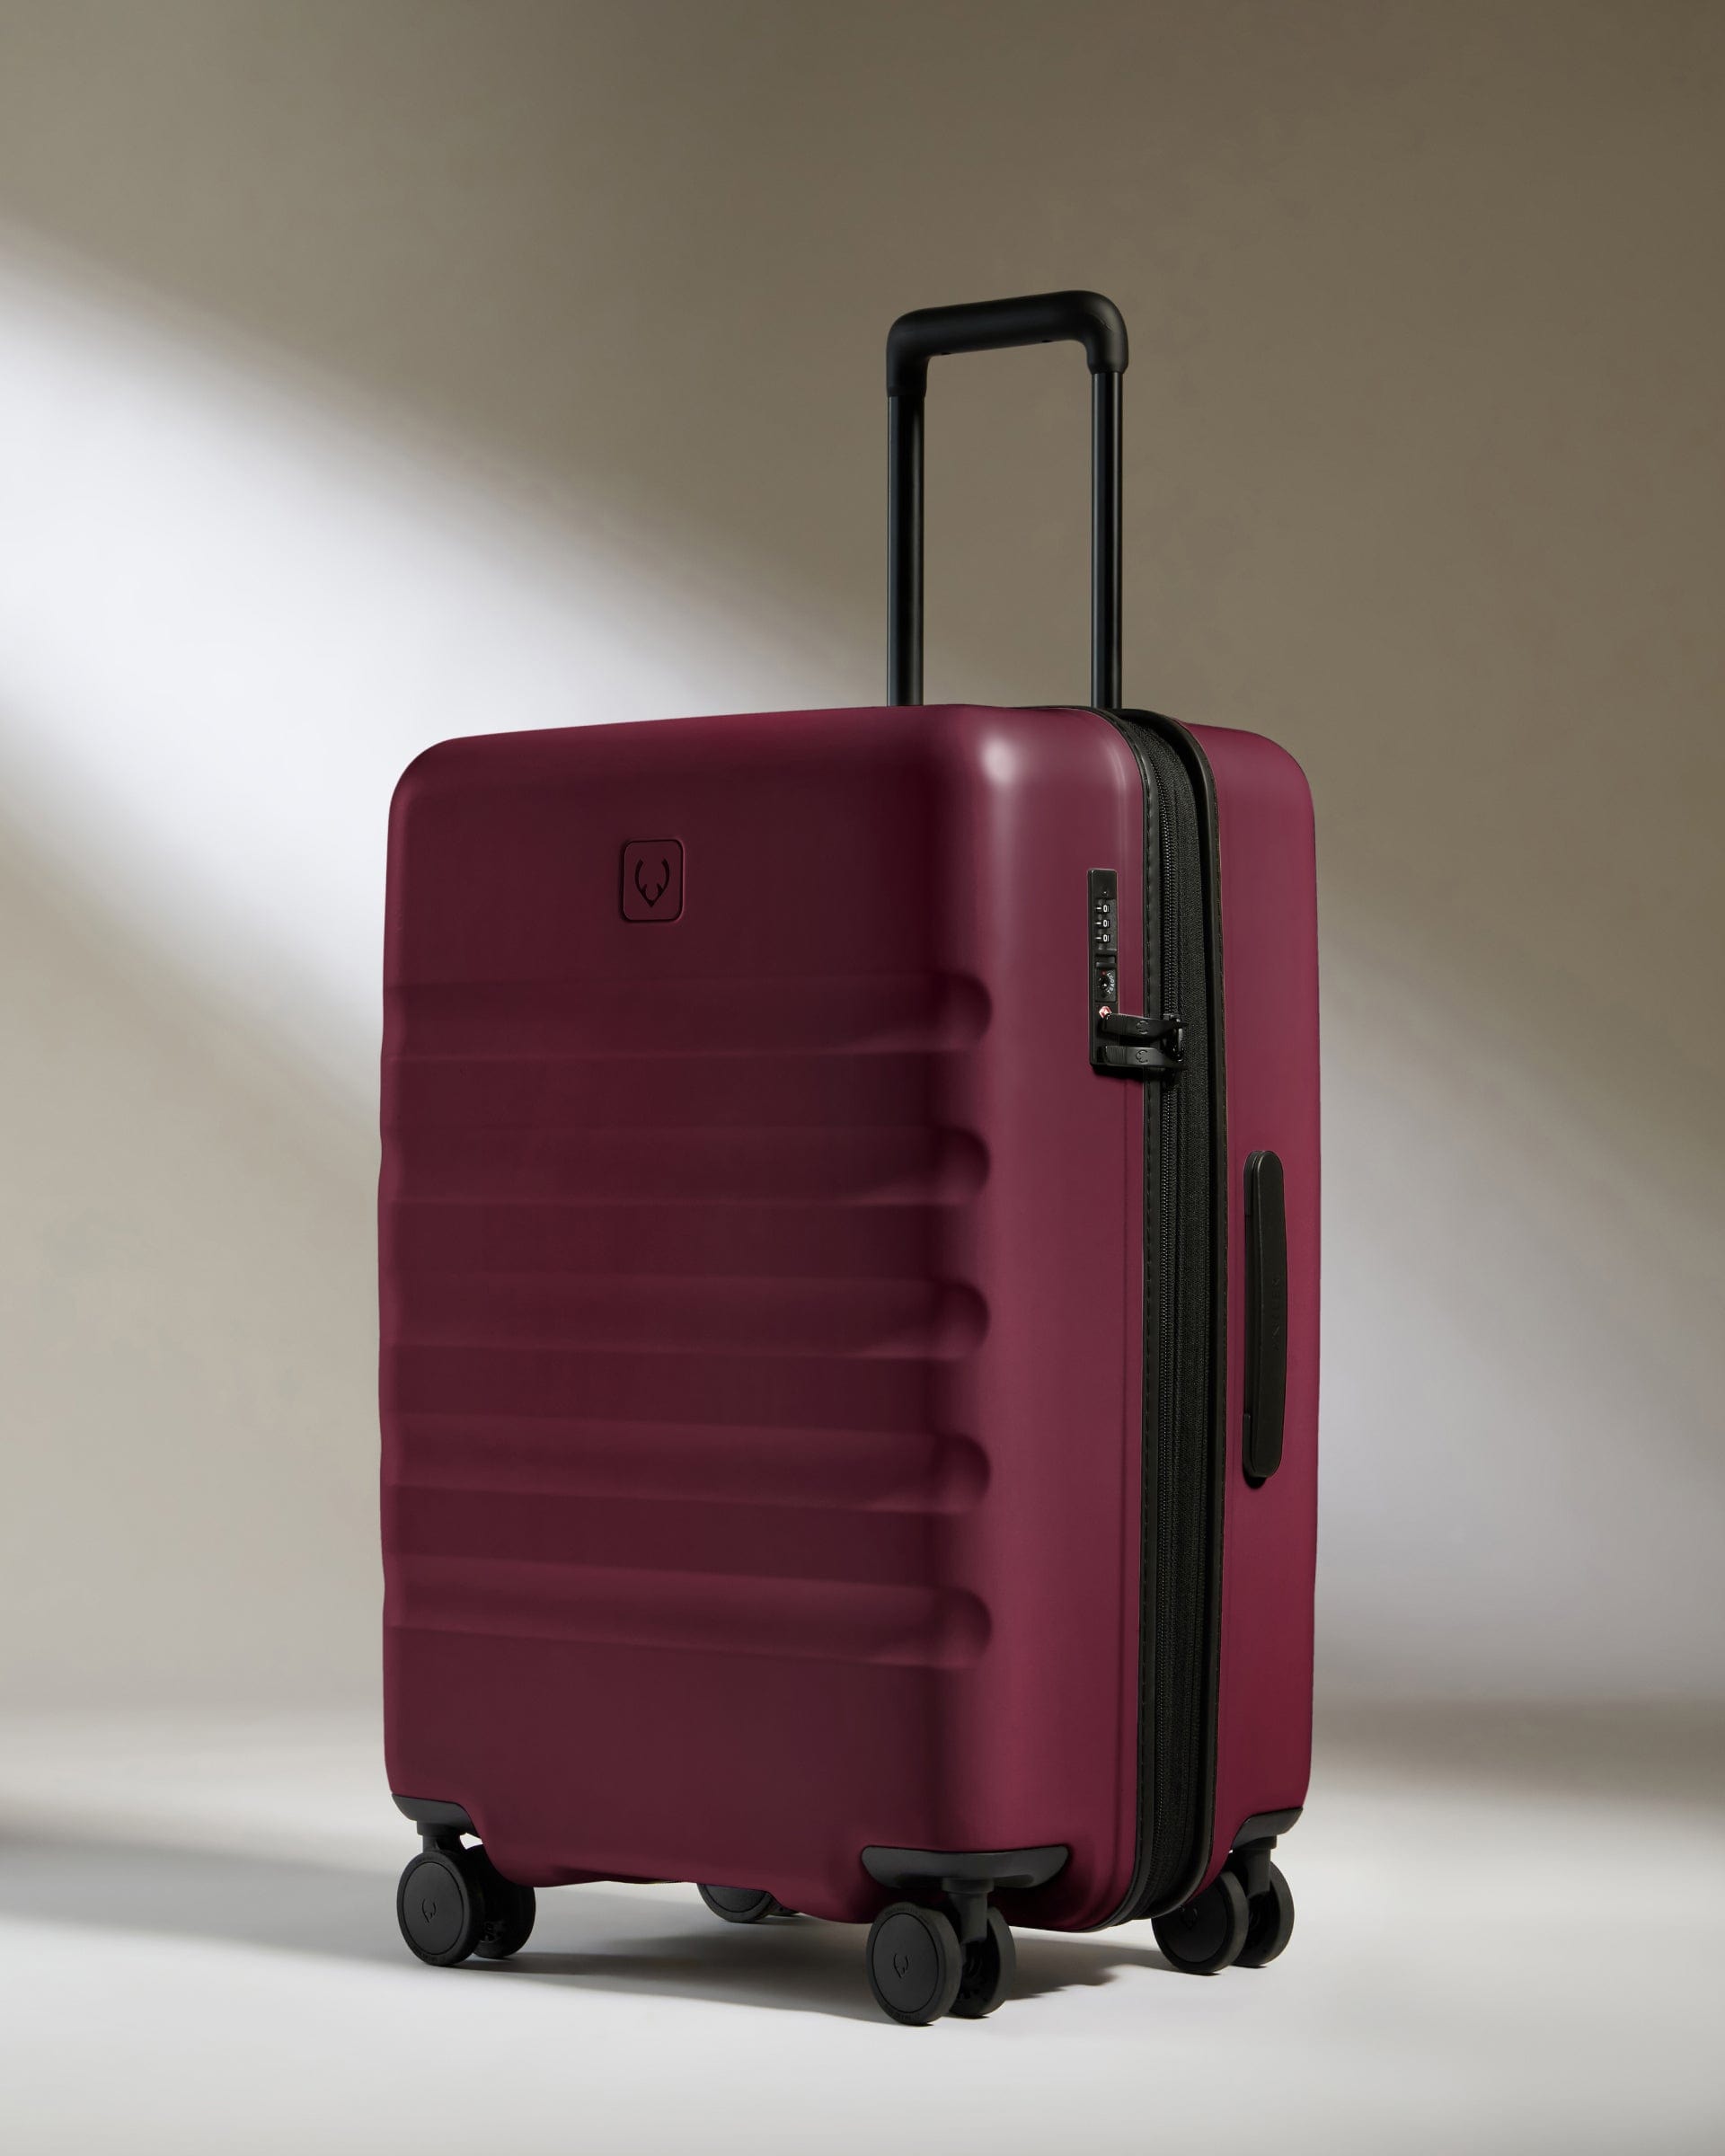 View Antler Icon Stripe Medium Suitcase In Heather Purple Size 455cm x 66cm x 30cm information